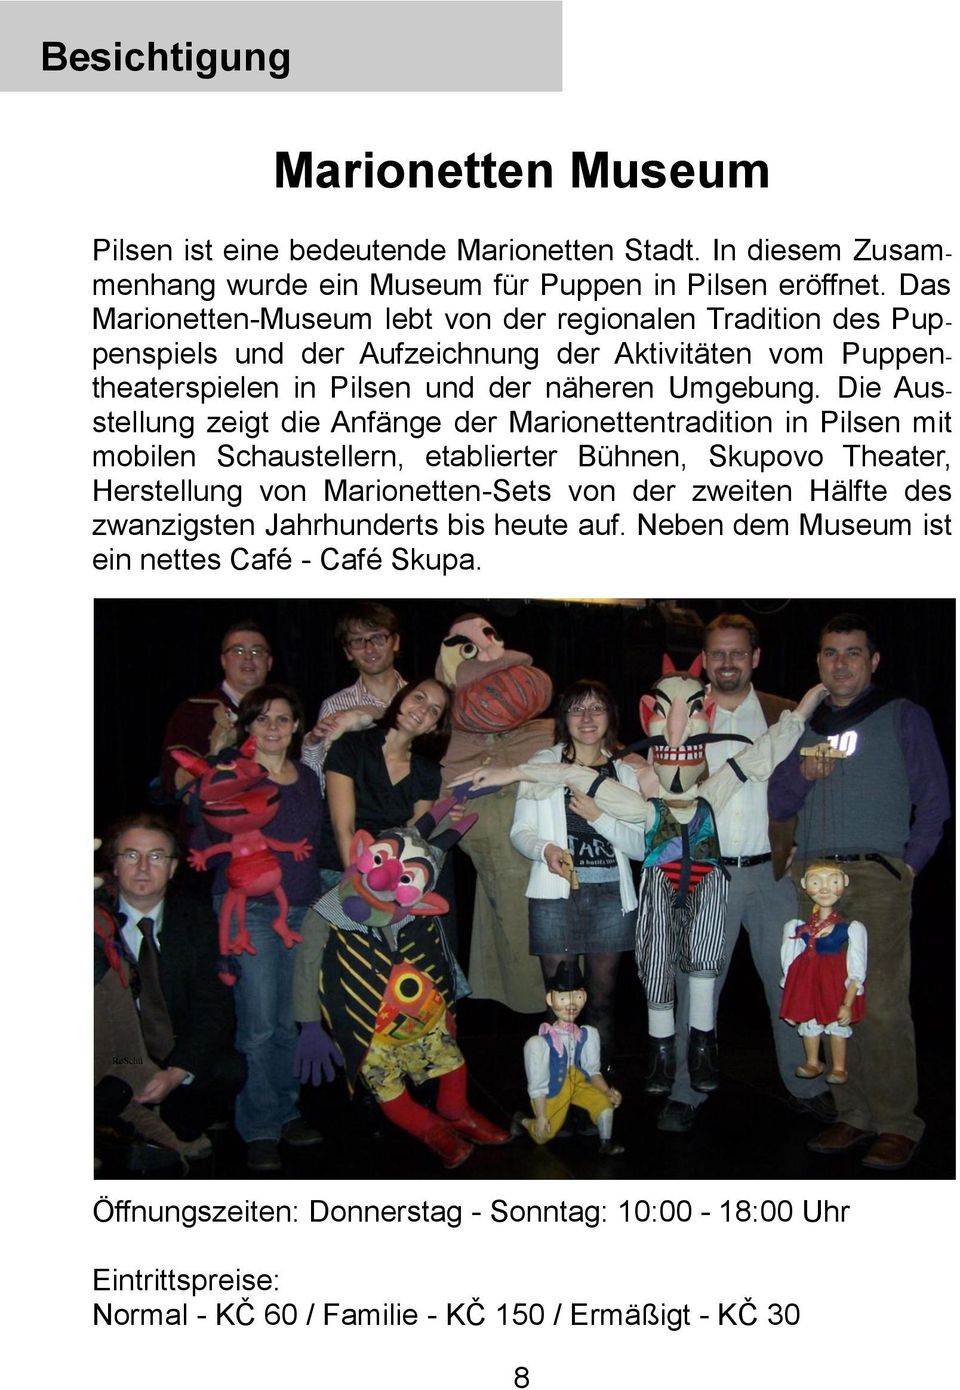 Die Ausstellung zeigt die Anfänge der Marionettentradition in Pilsen mit mobilen Schaustellern, etablierter Bühnen, Skupovo Theater, Herstellung von Marionetten-Sets von der zweiten